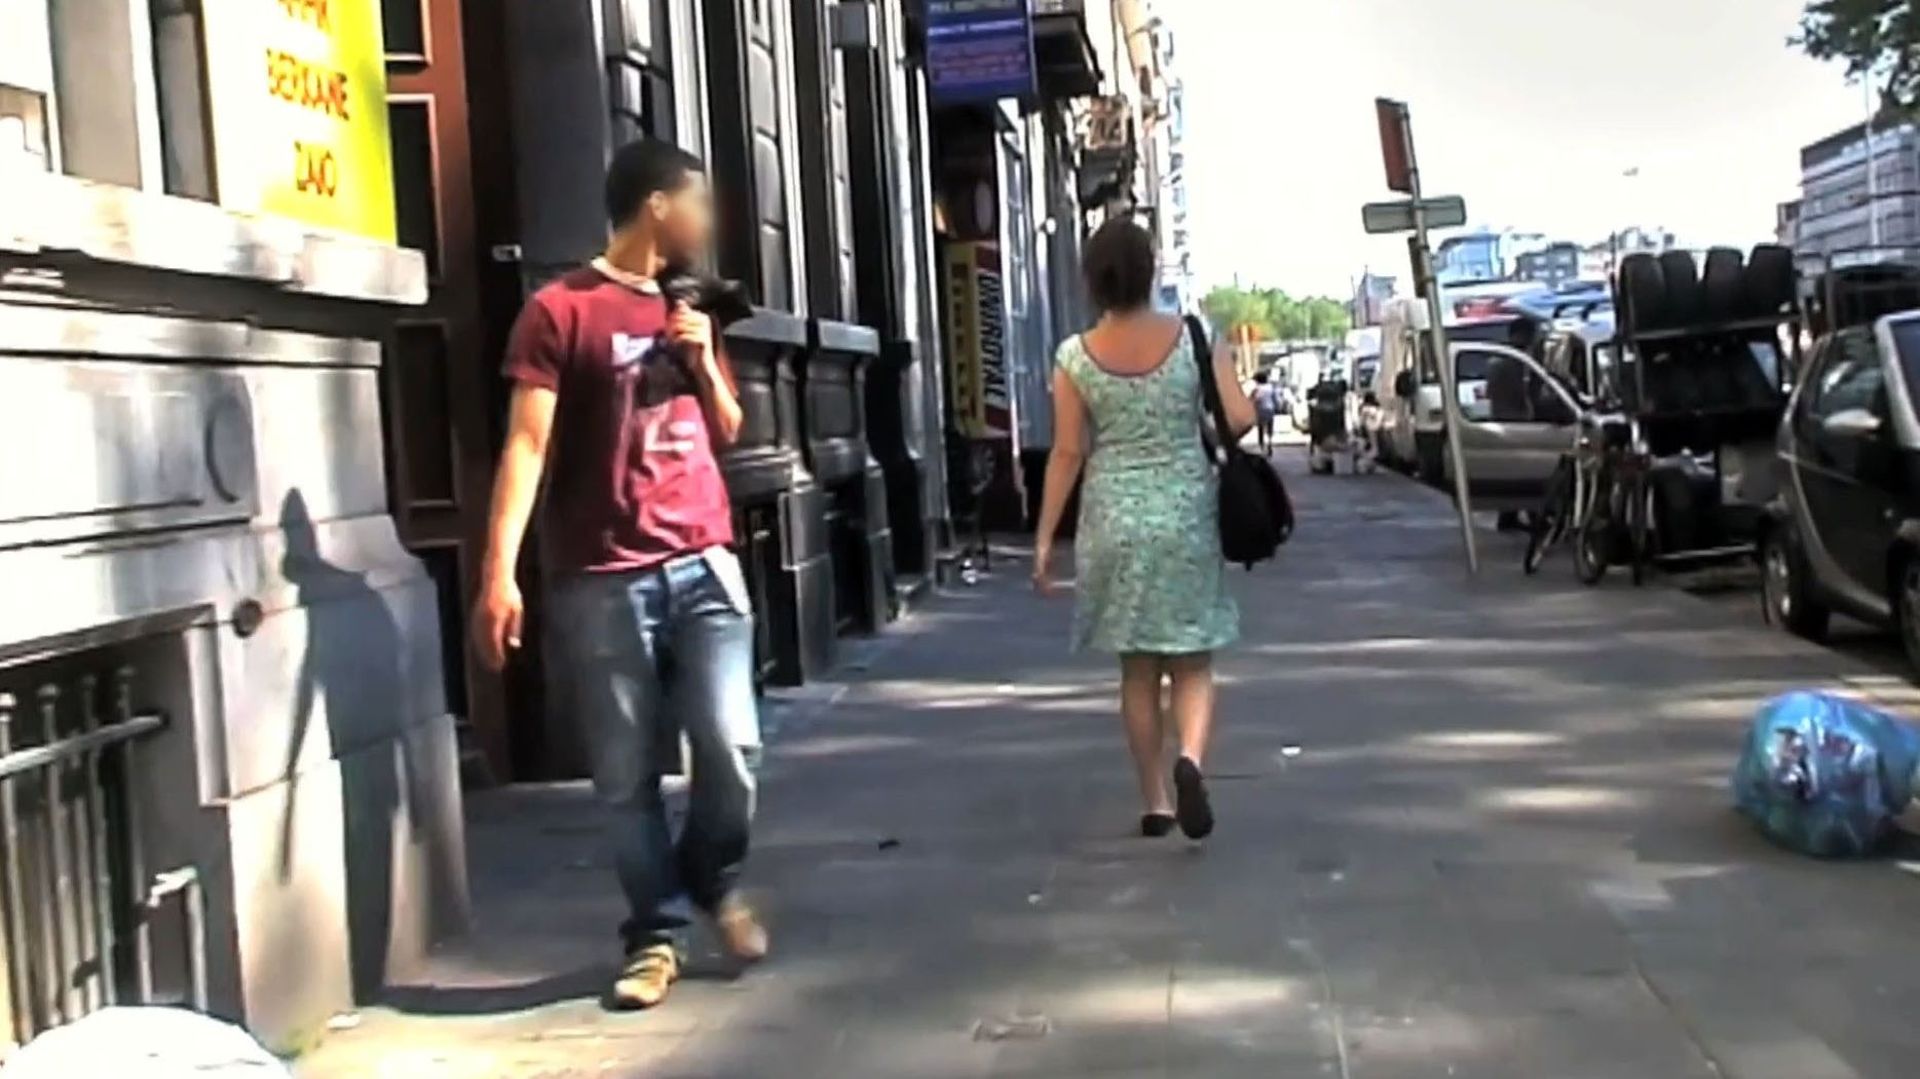 "Femme de la rue", un documentaire qui mettait le doigt sur un problème peu évoqué en 2012